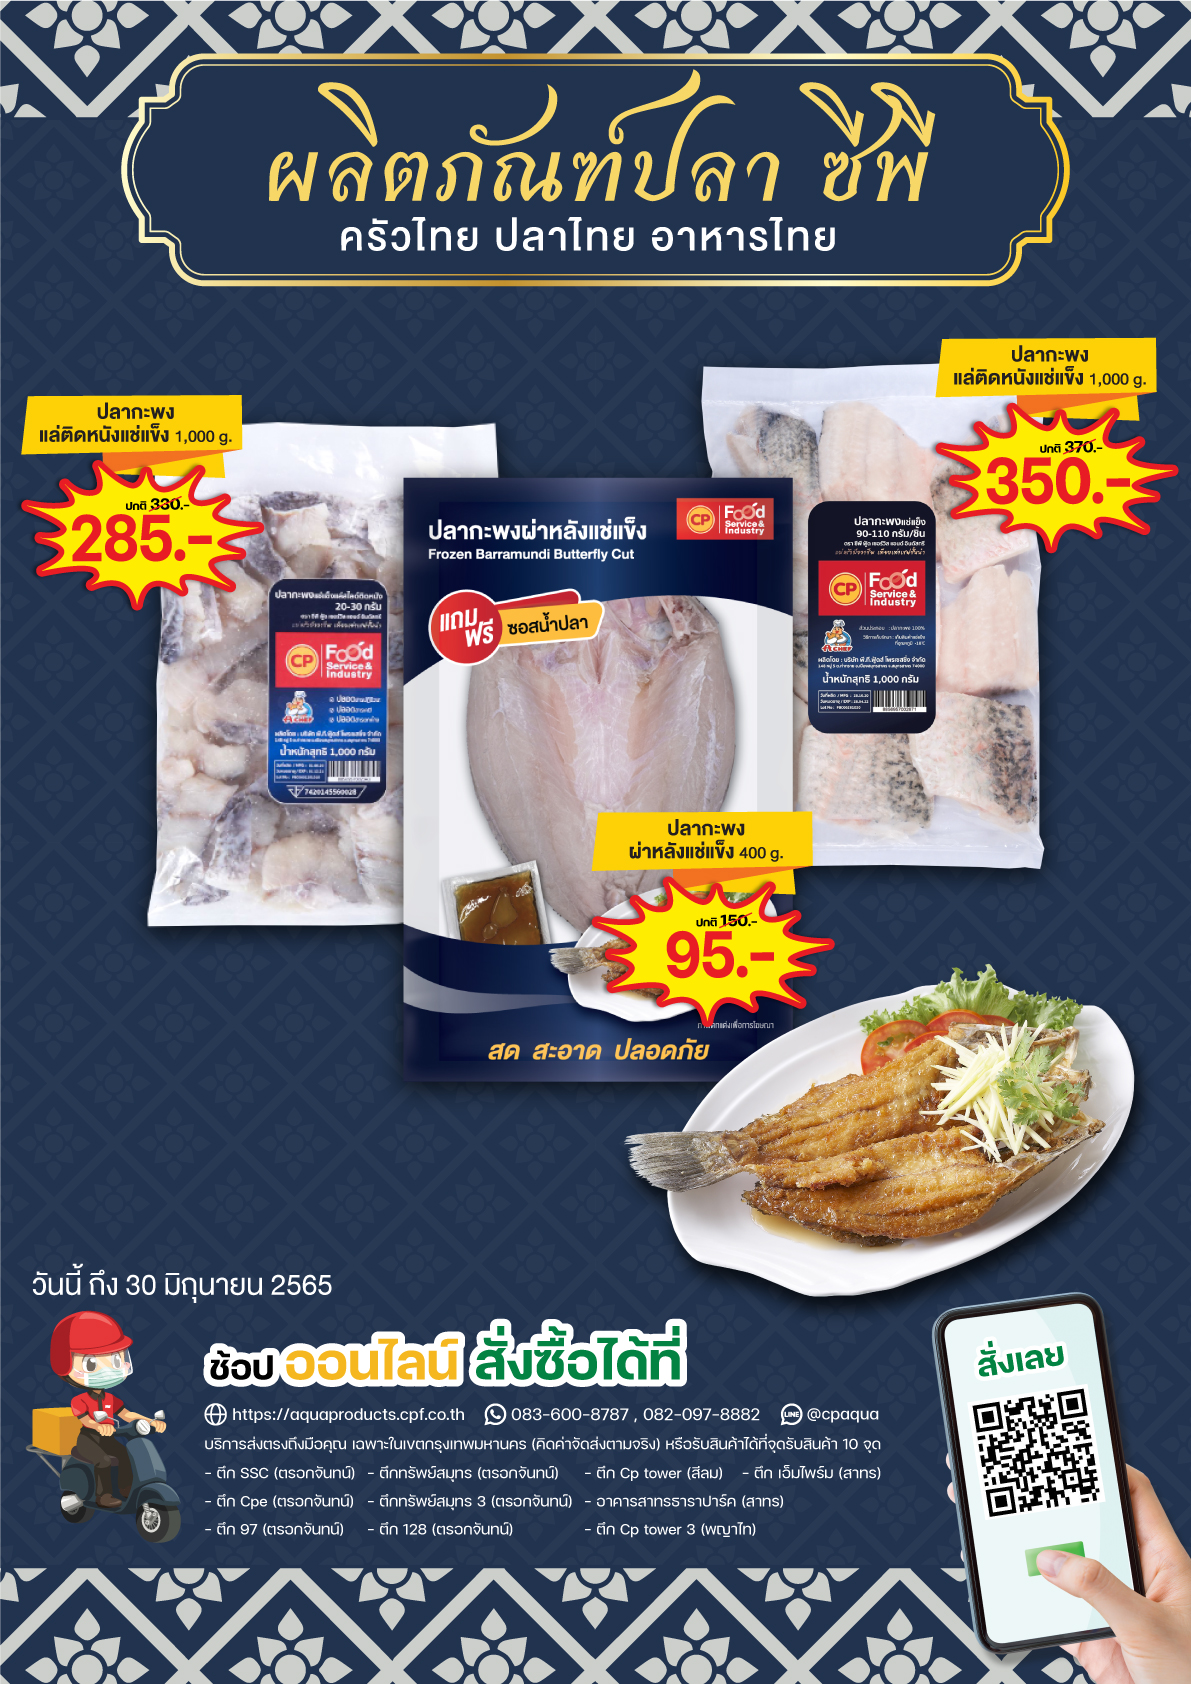 ผลิตภัณฑ์ปลา ซีพี ครัวไทย ปลาไทย อาหารไทย